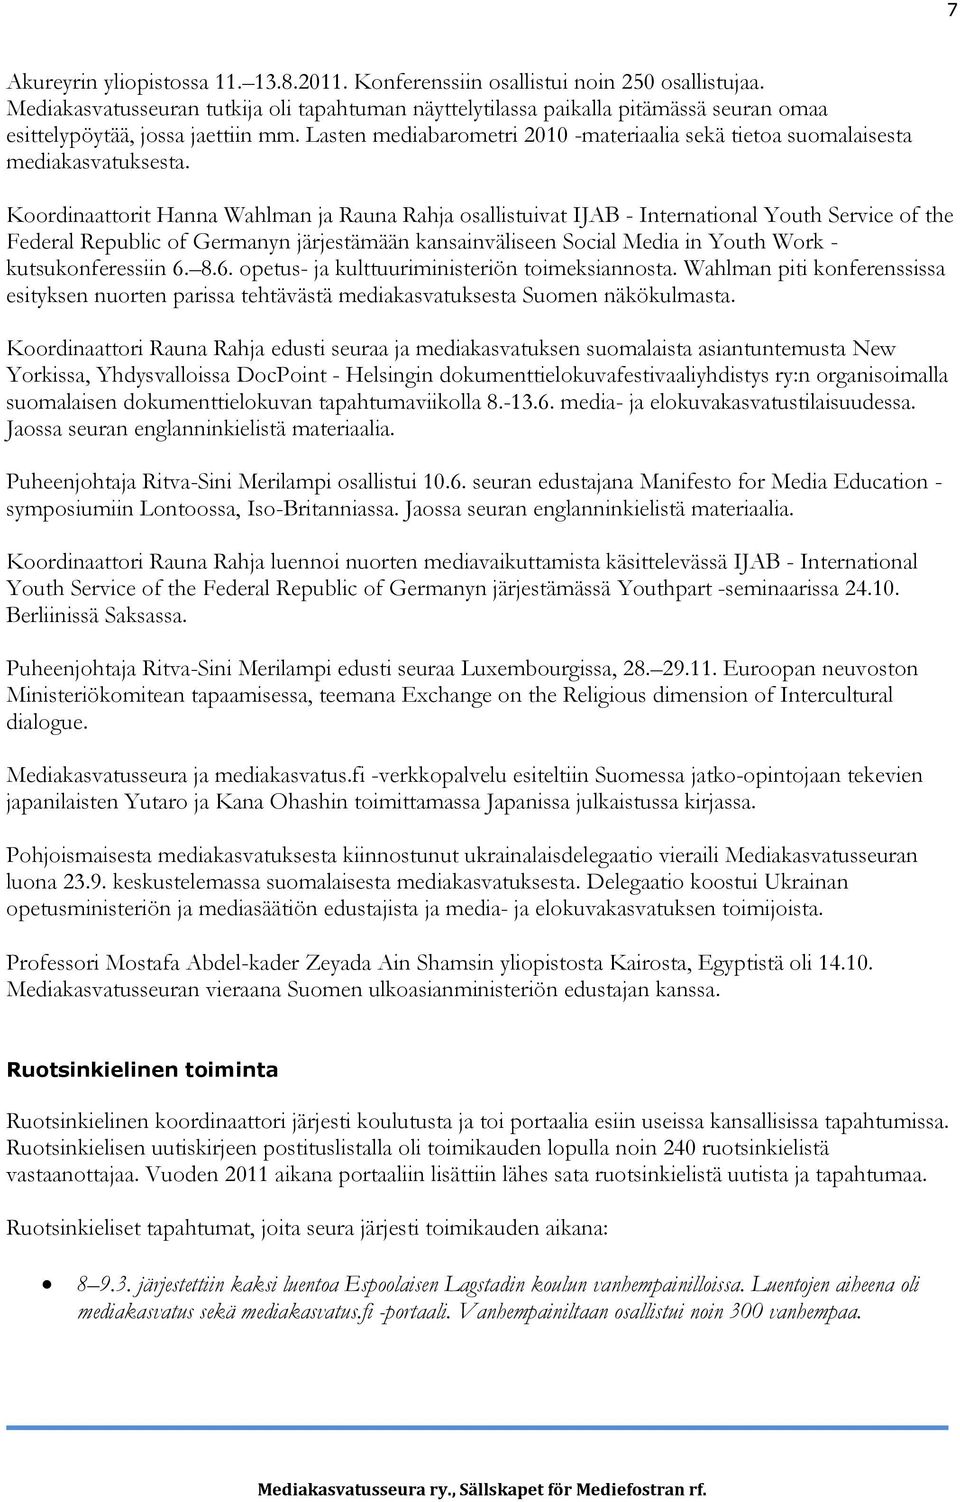 Lasten mediabarometri 2010 -materiaalia sekä tietoa suomalaisesta mediakasvatuksesta.